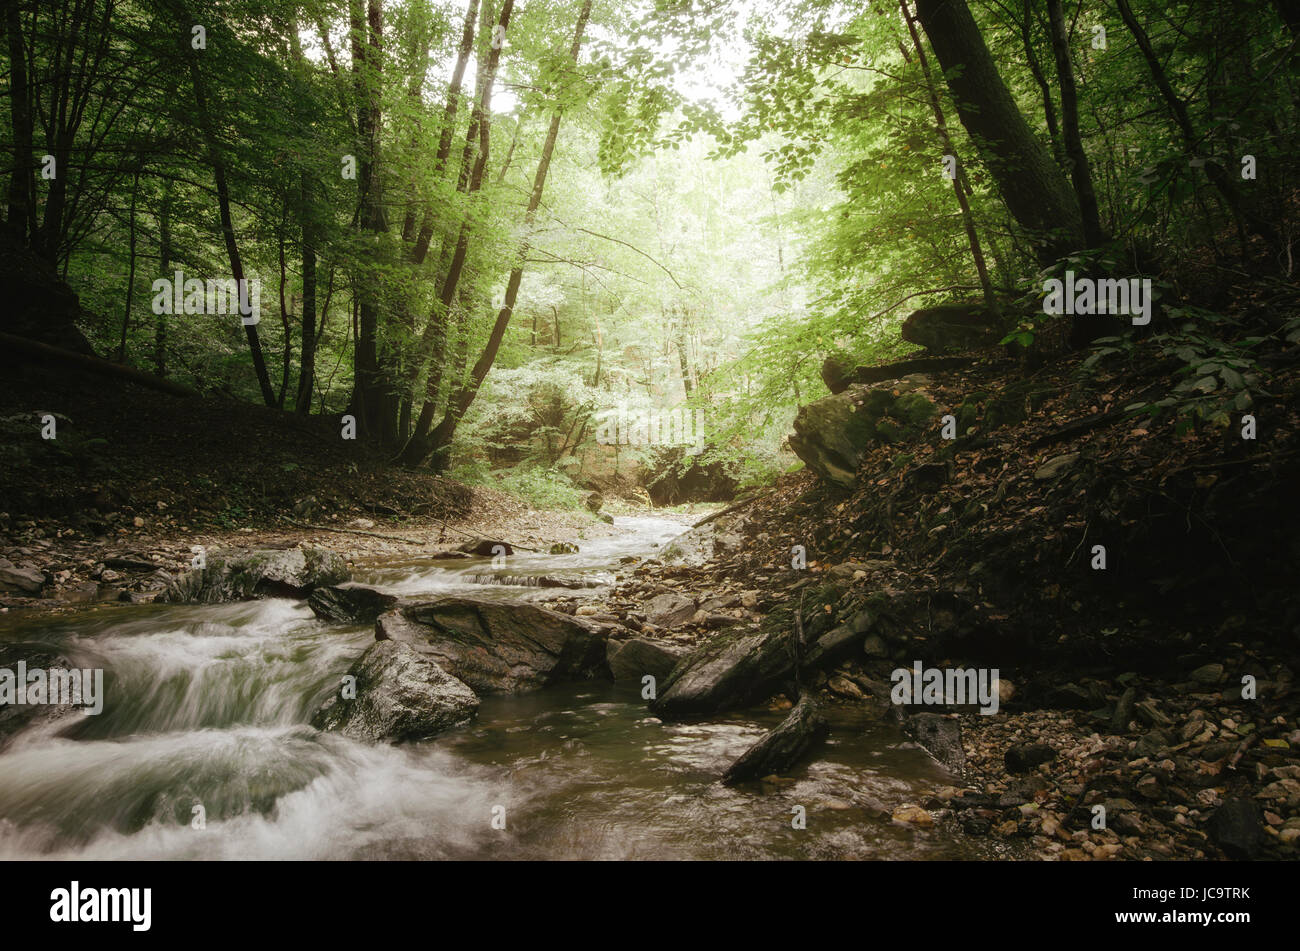 Flusso di foresta paesaggio. Acqua, alberi e foglie verdi in uno scenario naturale Foto Stock